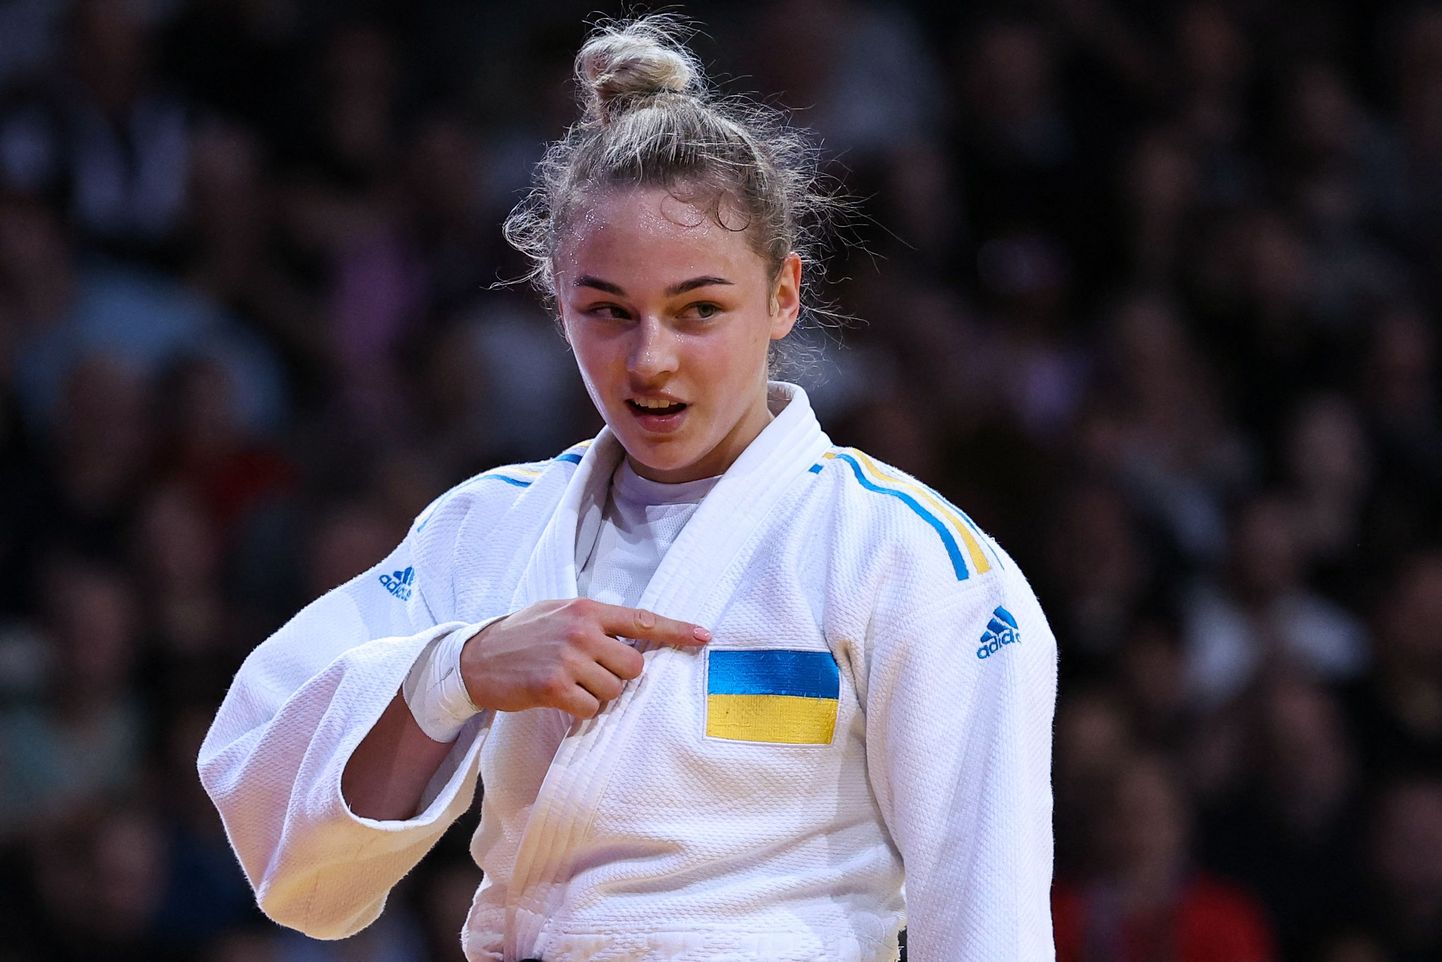 Ukraina judokas Daria Bilodid, kes oli 2019. aastal euroopa- ja maailmameister.